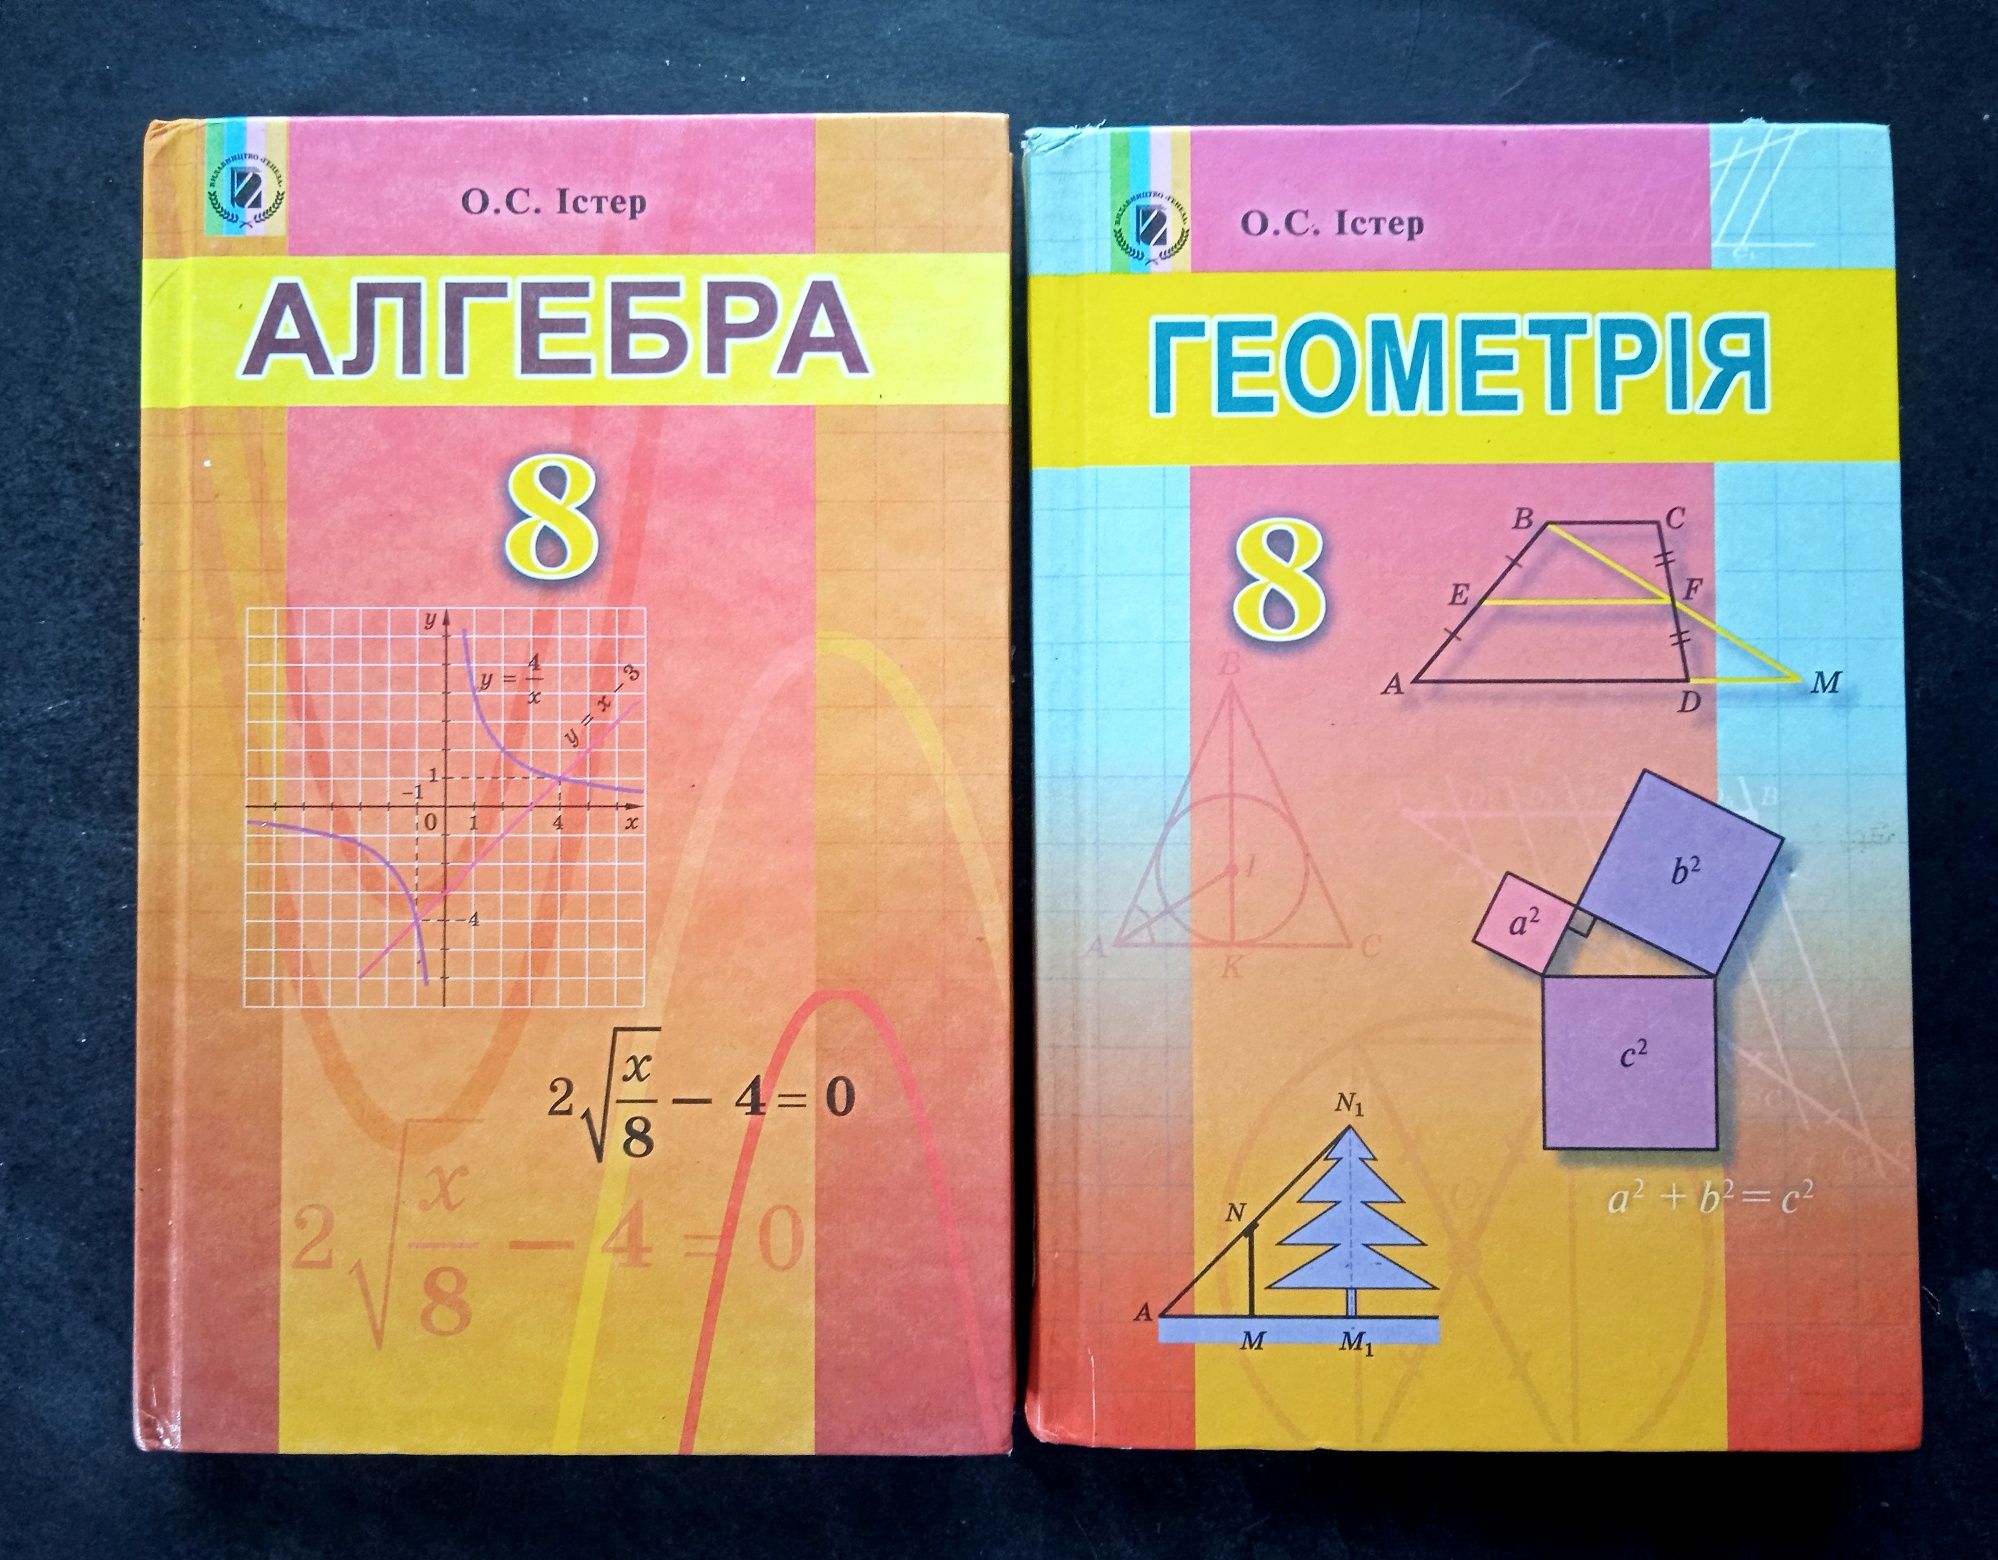 Підручники з алгебри і геометрії, 8 клас, Істер